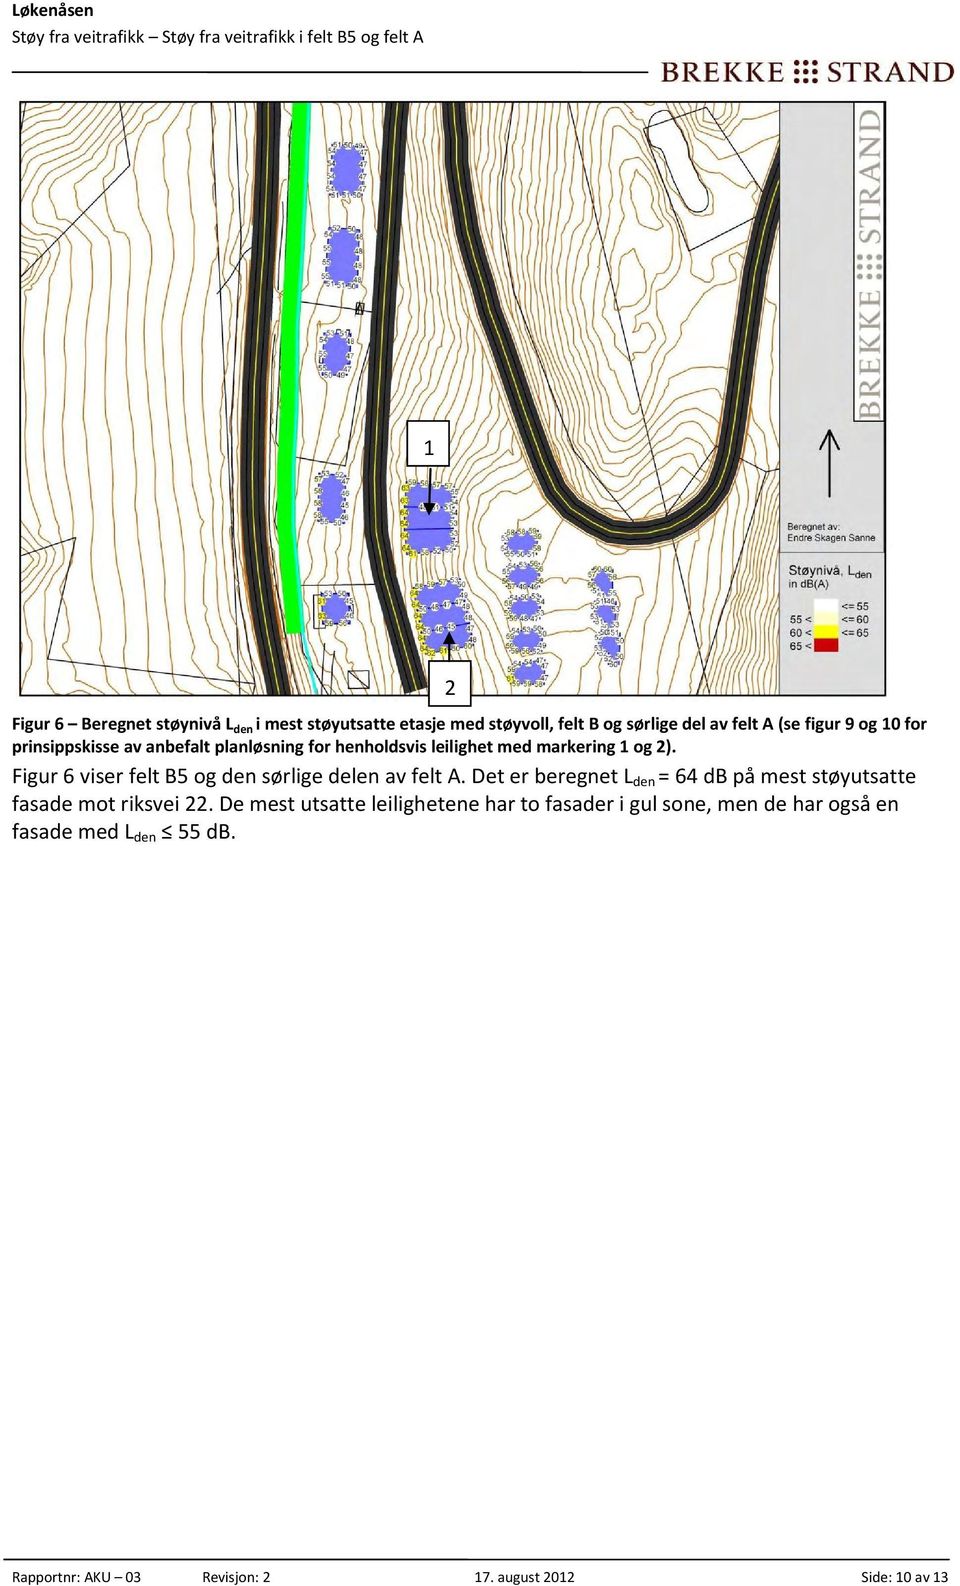 Figur 6 viser felt B5 og den sørlige delen av felt A. Det er beregnet L den = 64 db på mest støyutsatte fasade mot riksvei 22.